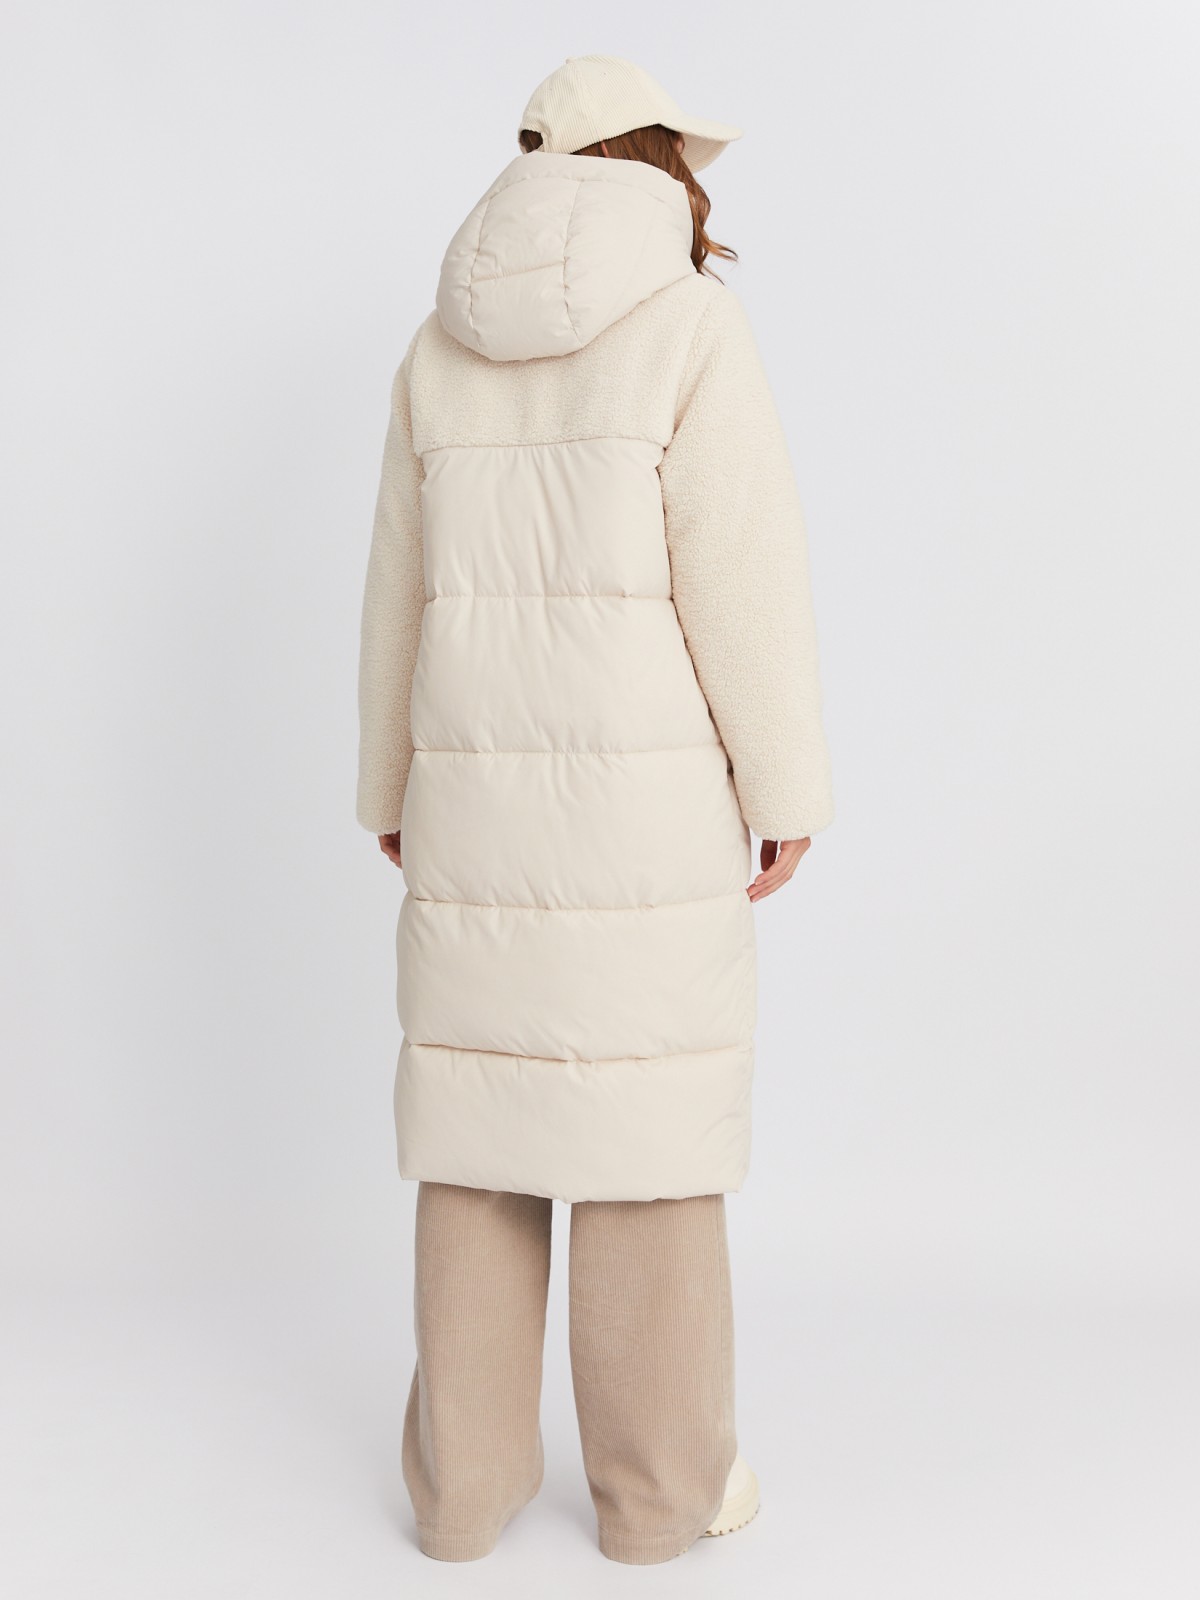 Тёплая куртка-пальто с отделкой из экомеха и капюшоном zolla 023425212154, цвет молоко, размер M - фото 6